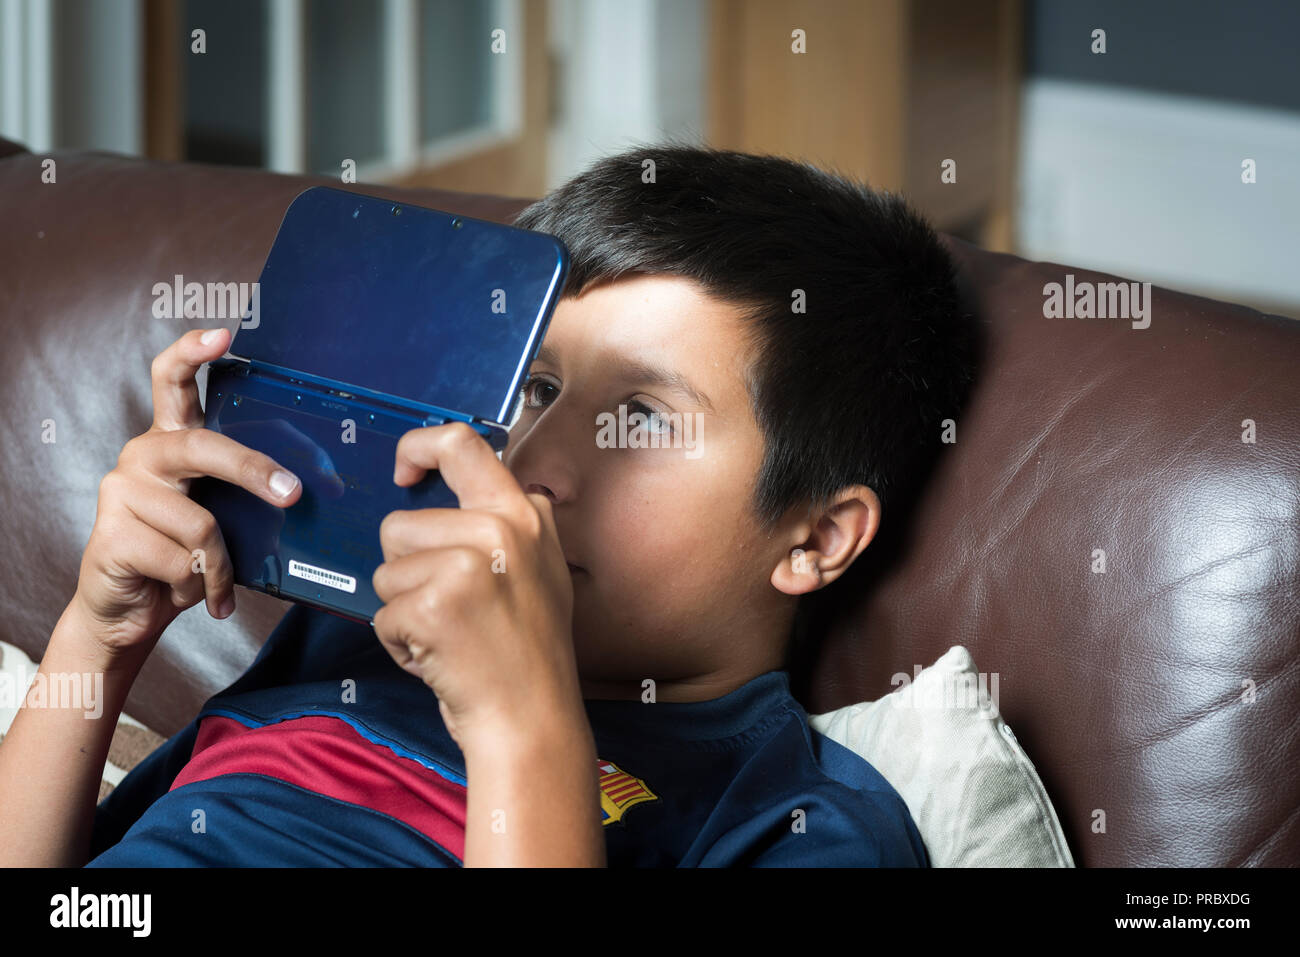 Okuläre Abweichung. Extreme Gaming und elektronische Gadgets verwenden könnten Kinder cross-eyed-boy spielt computer spiel auf tragbare Spielekonsole Stockfoto